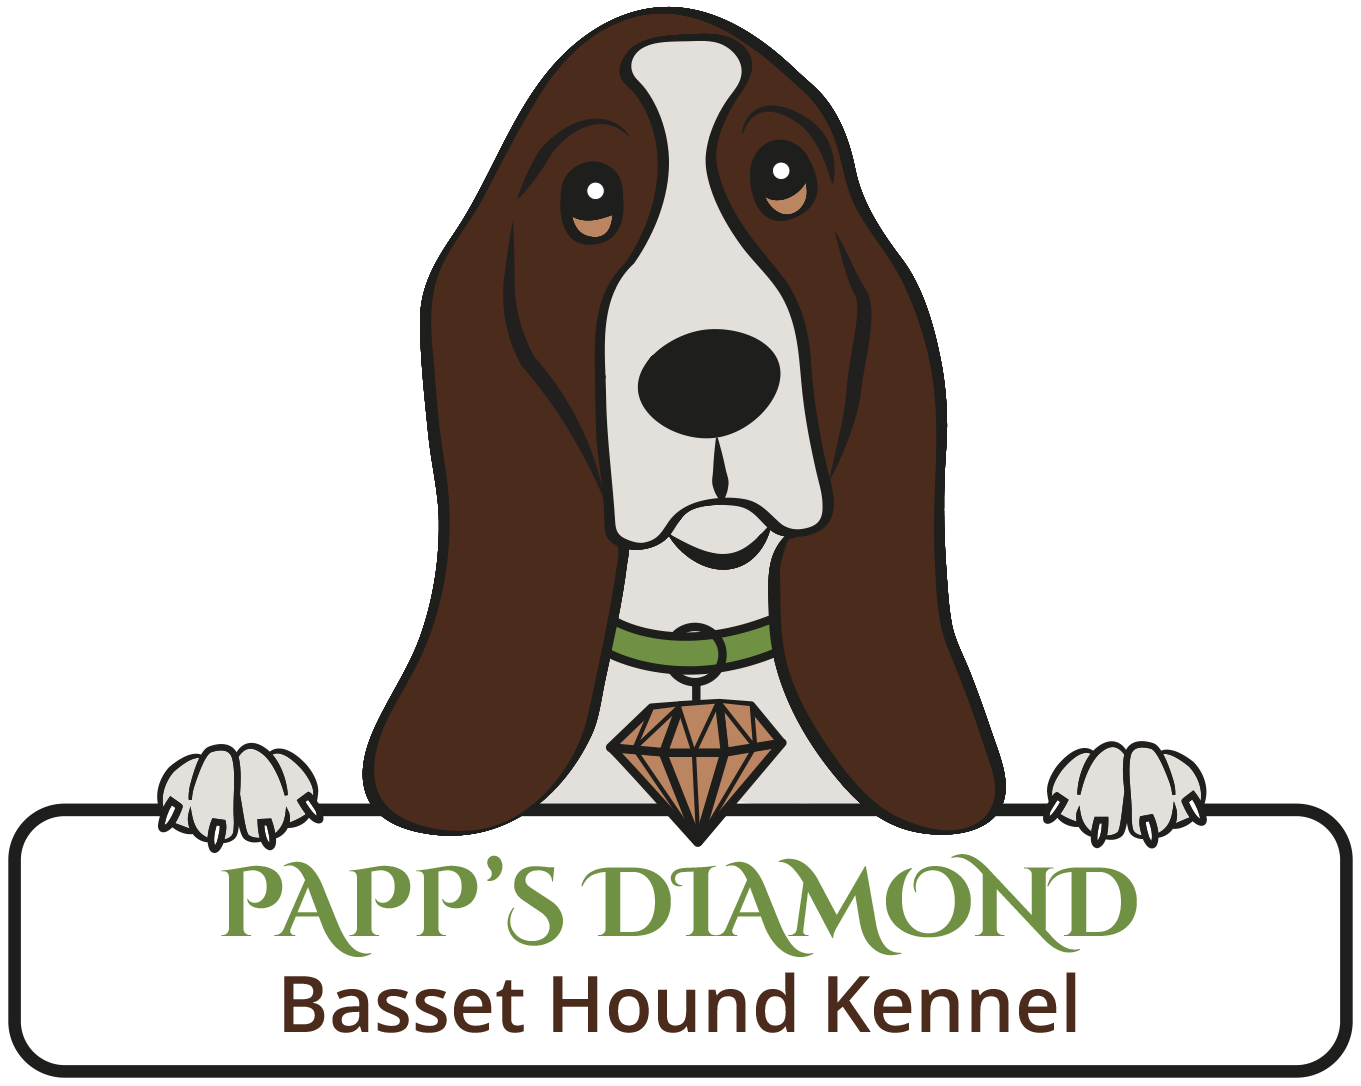 Papps Diamond Basset Hound Kennel